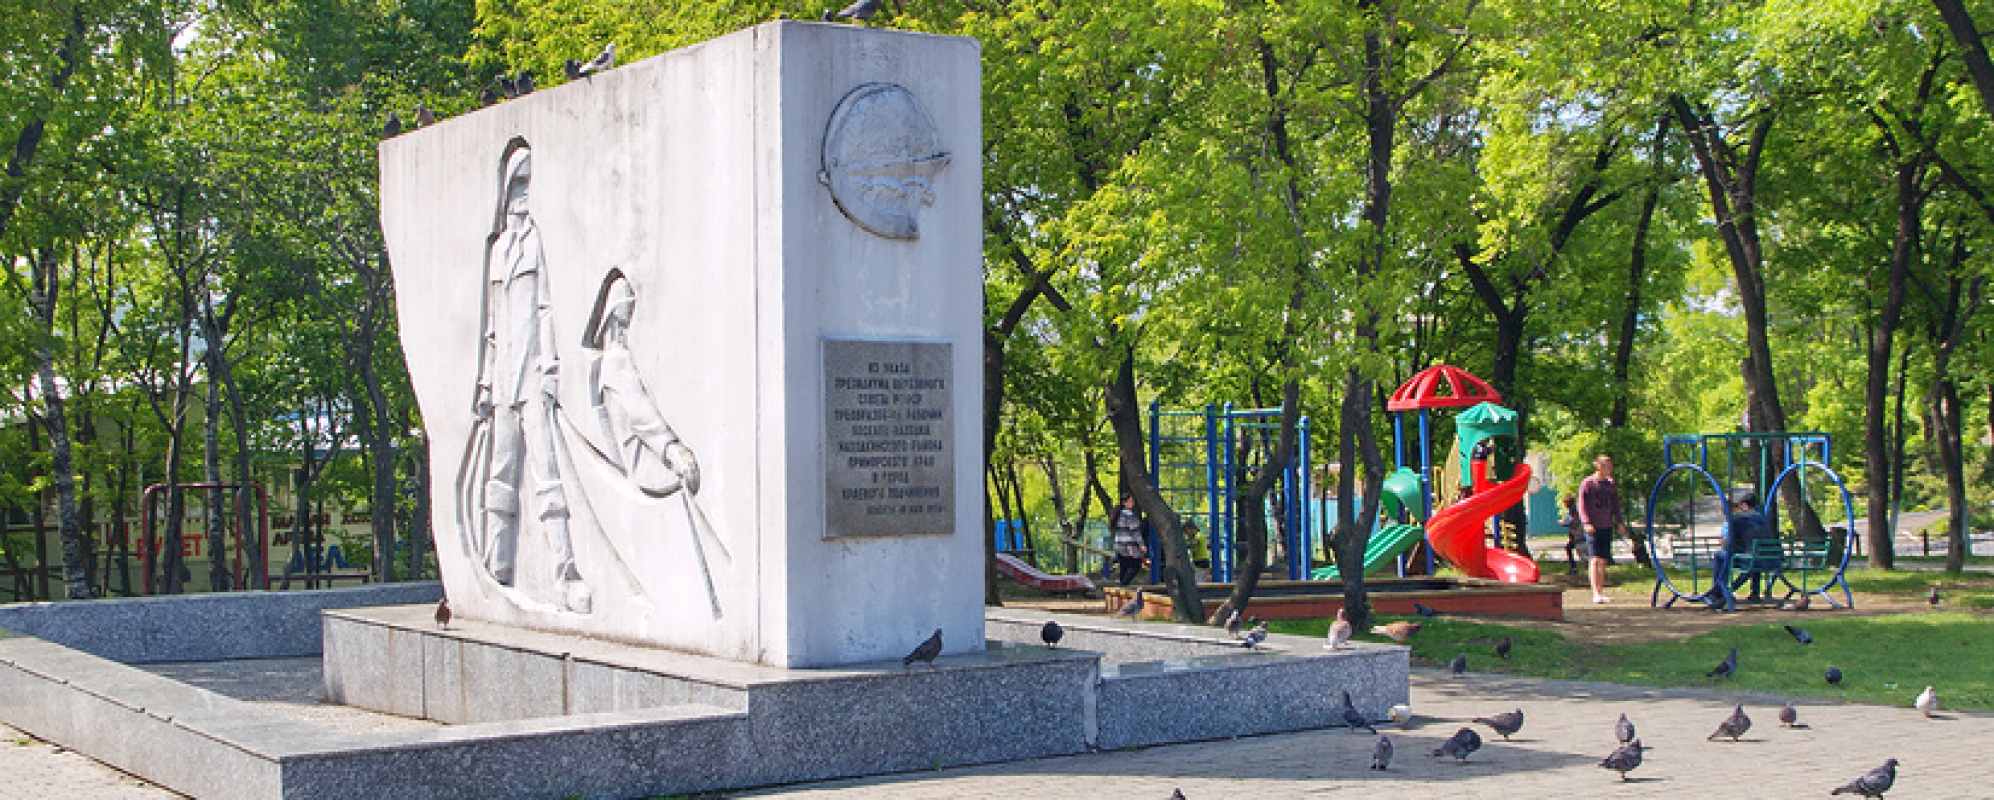 Фотографии памятника Стела Совершеннолетия